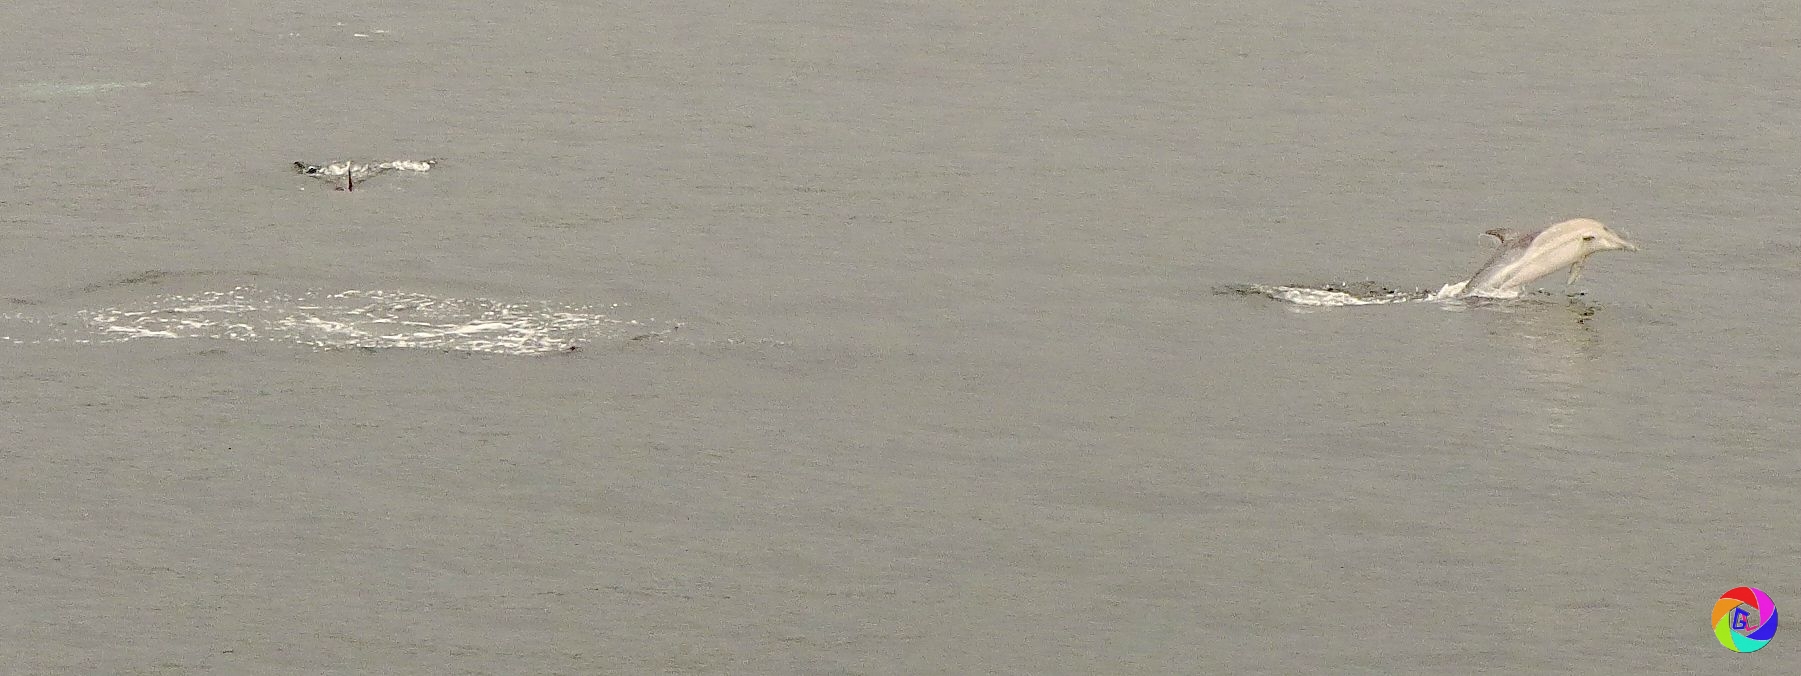 Ferry spun round to follow dolphin pod